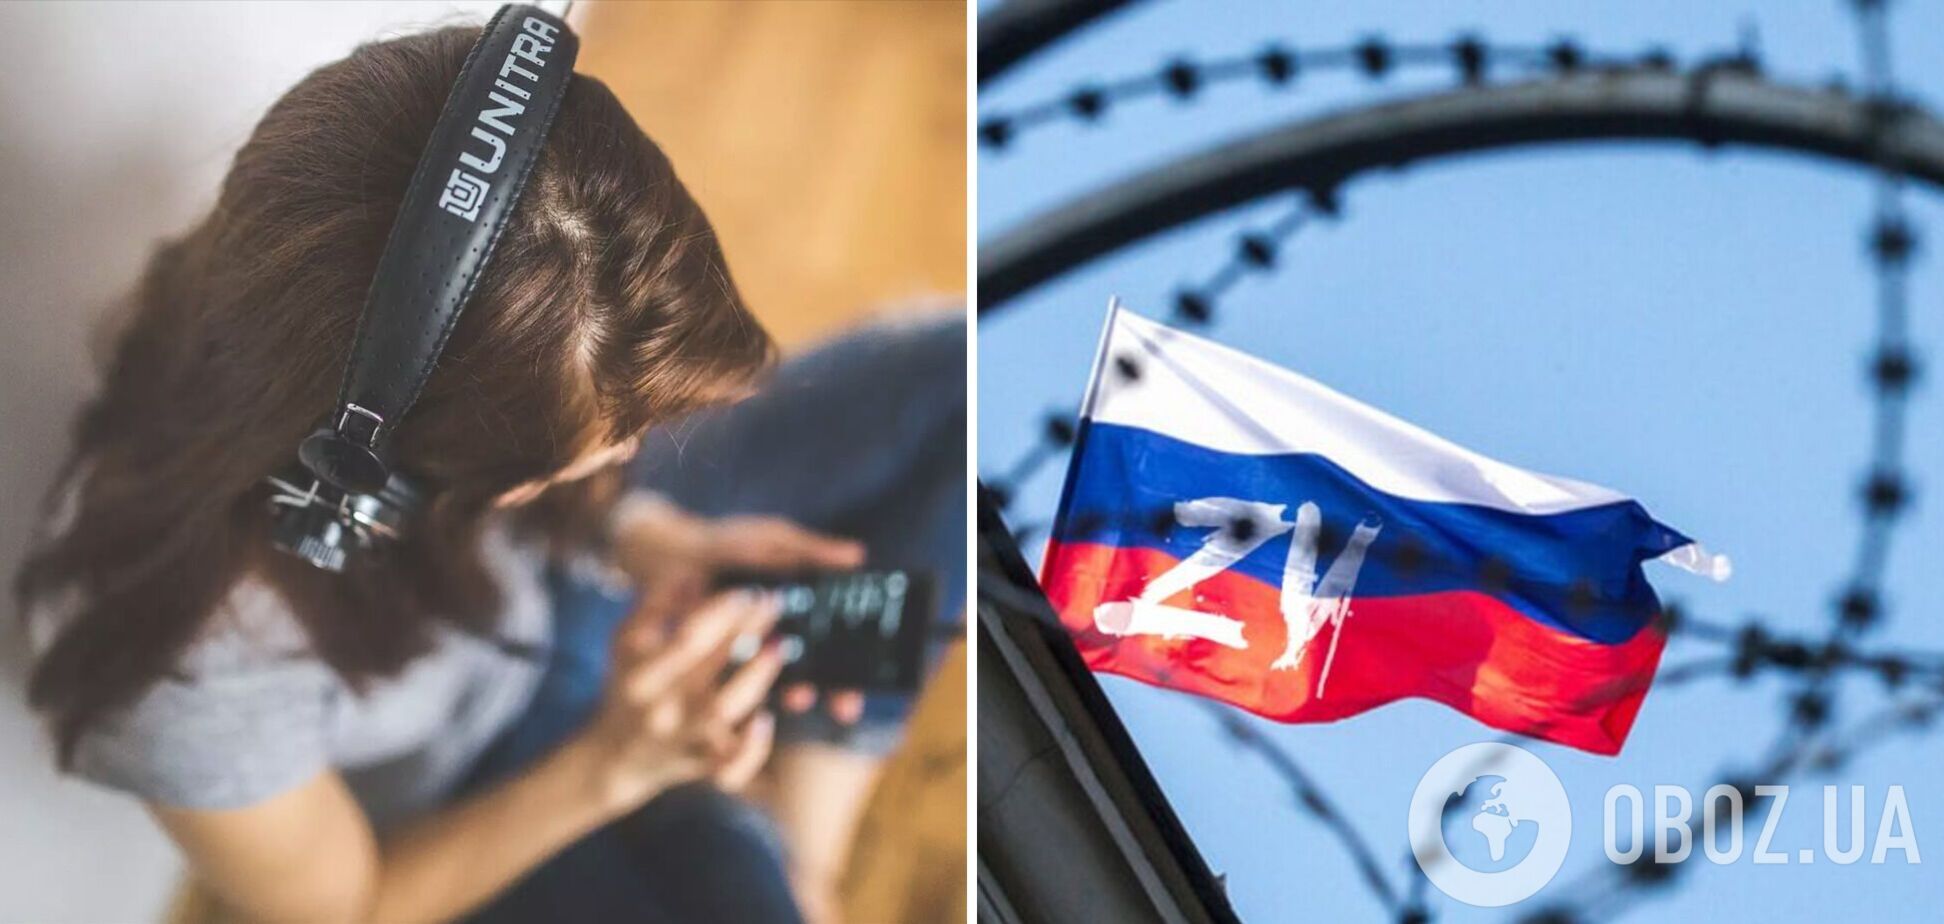 Українці вивели в топ на Spotify трек 'Да, я русский', який вийшов у день 'виборів' Путіна